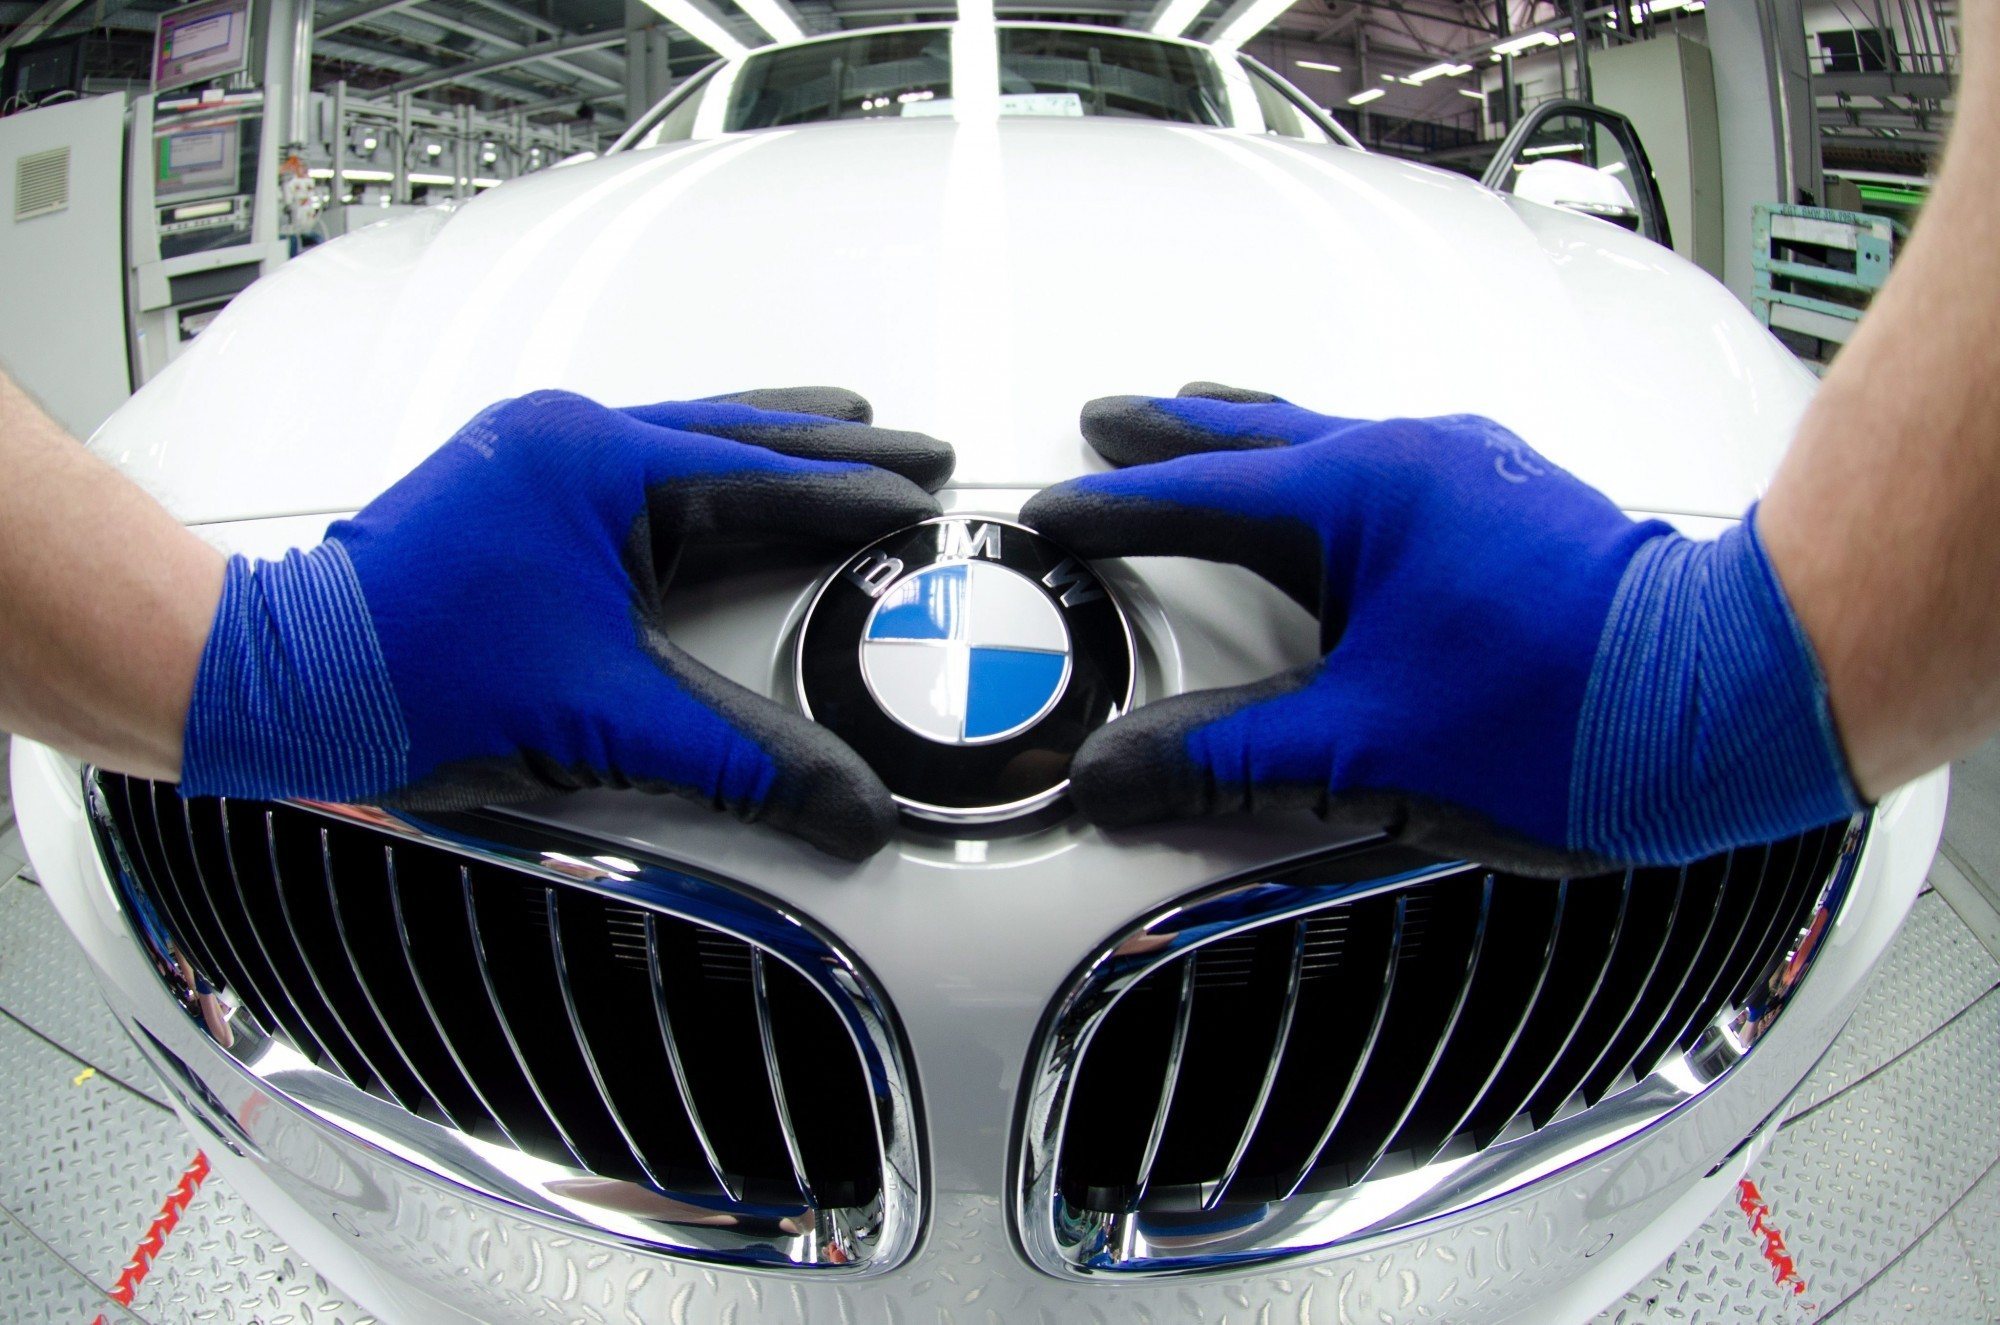 As vendas das três marcas do grupo - BMW, Mini e Rolls Royce - atingiram os 540.000 veículos vendidos.